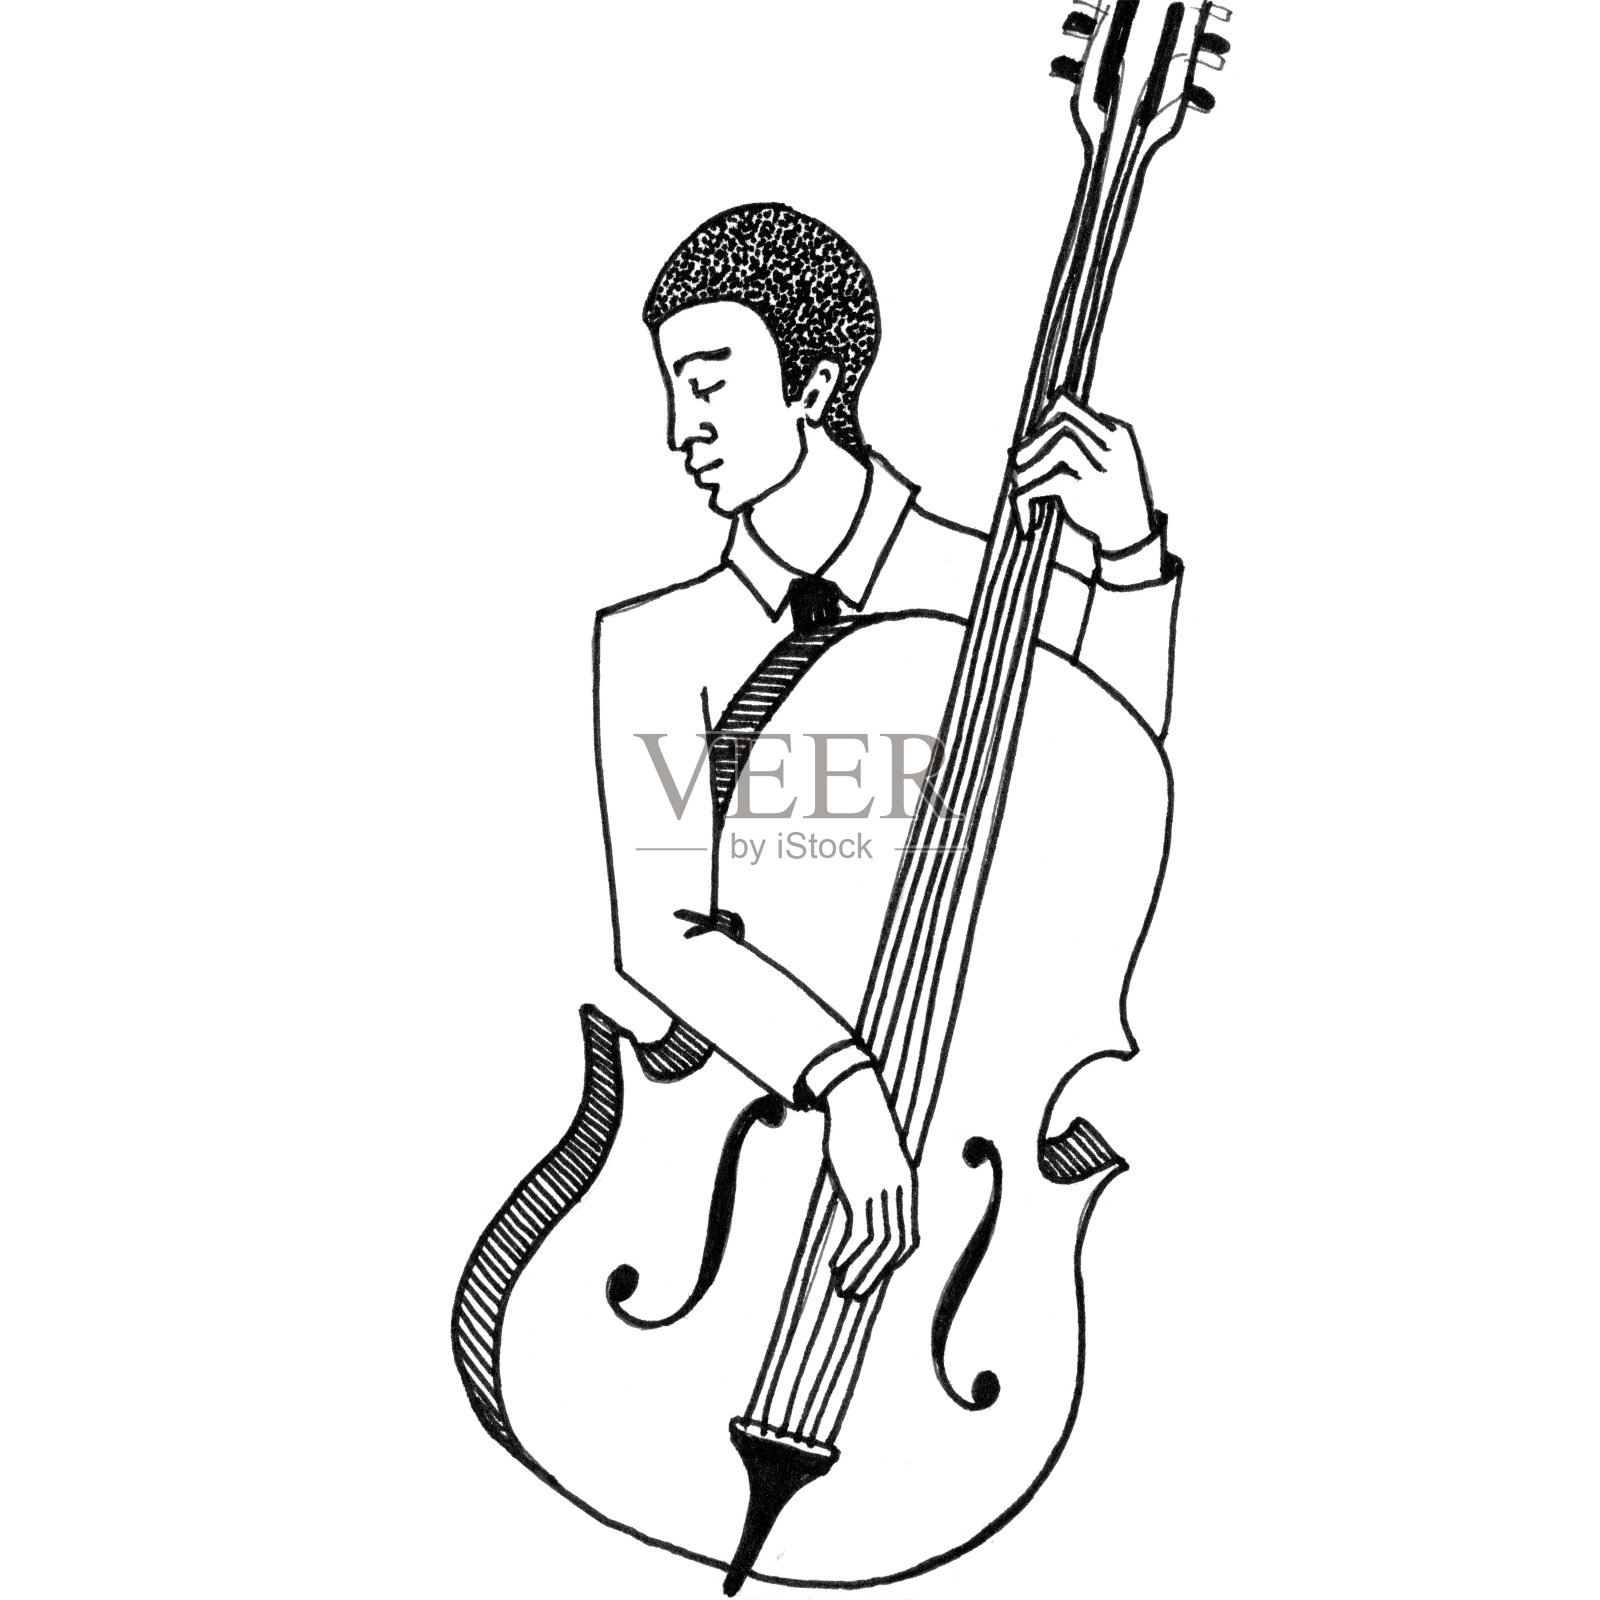 大提琴家的黑白素描。穿白夹克的人拉着低音提琴。插画图片素材